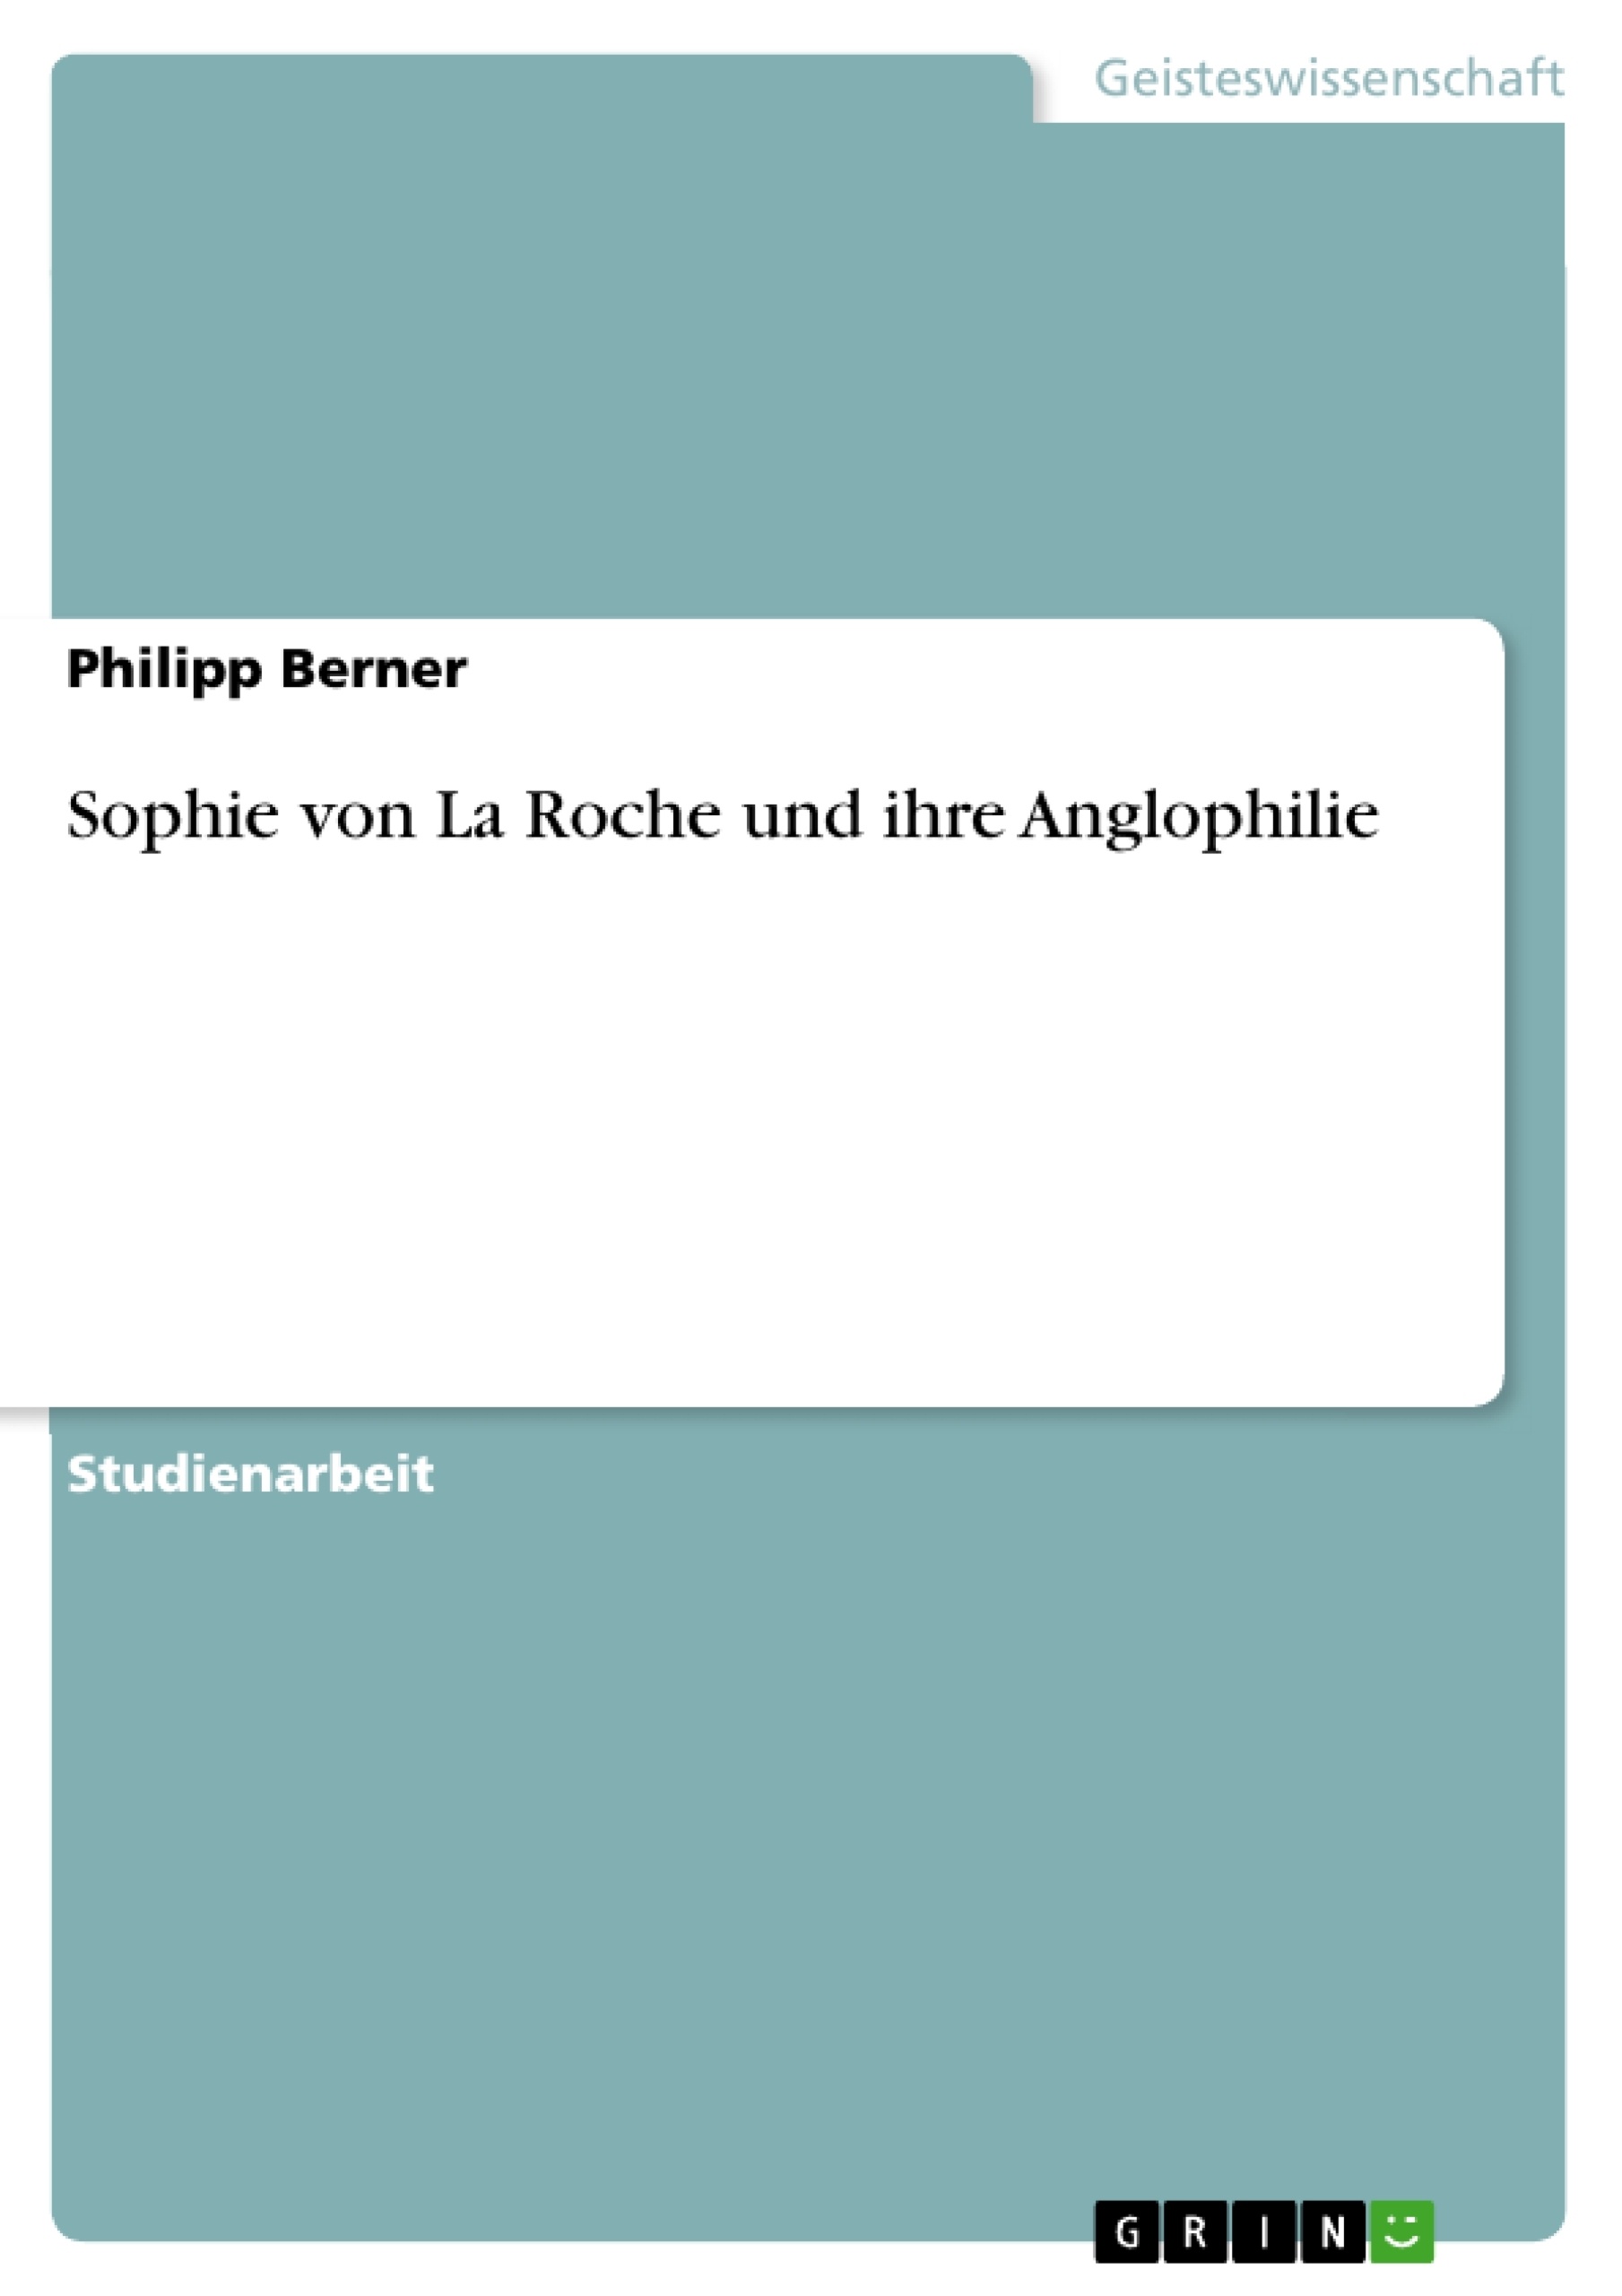 Título: Sophie von La Roche und ihre Anglophilie 